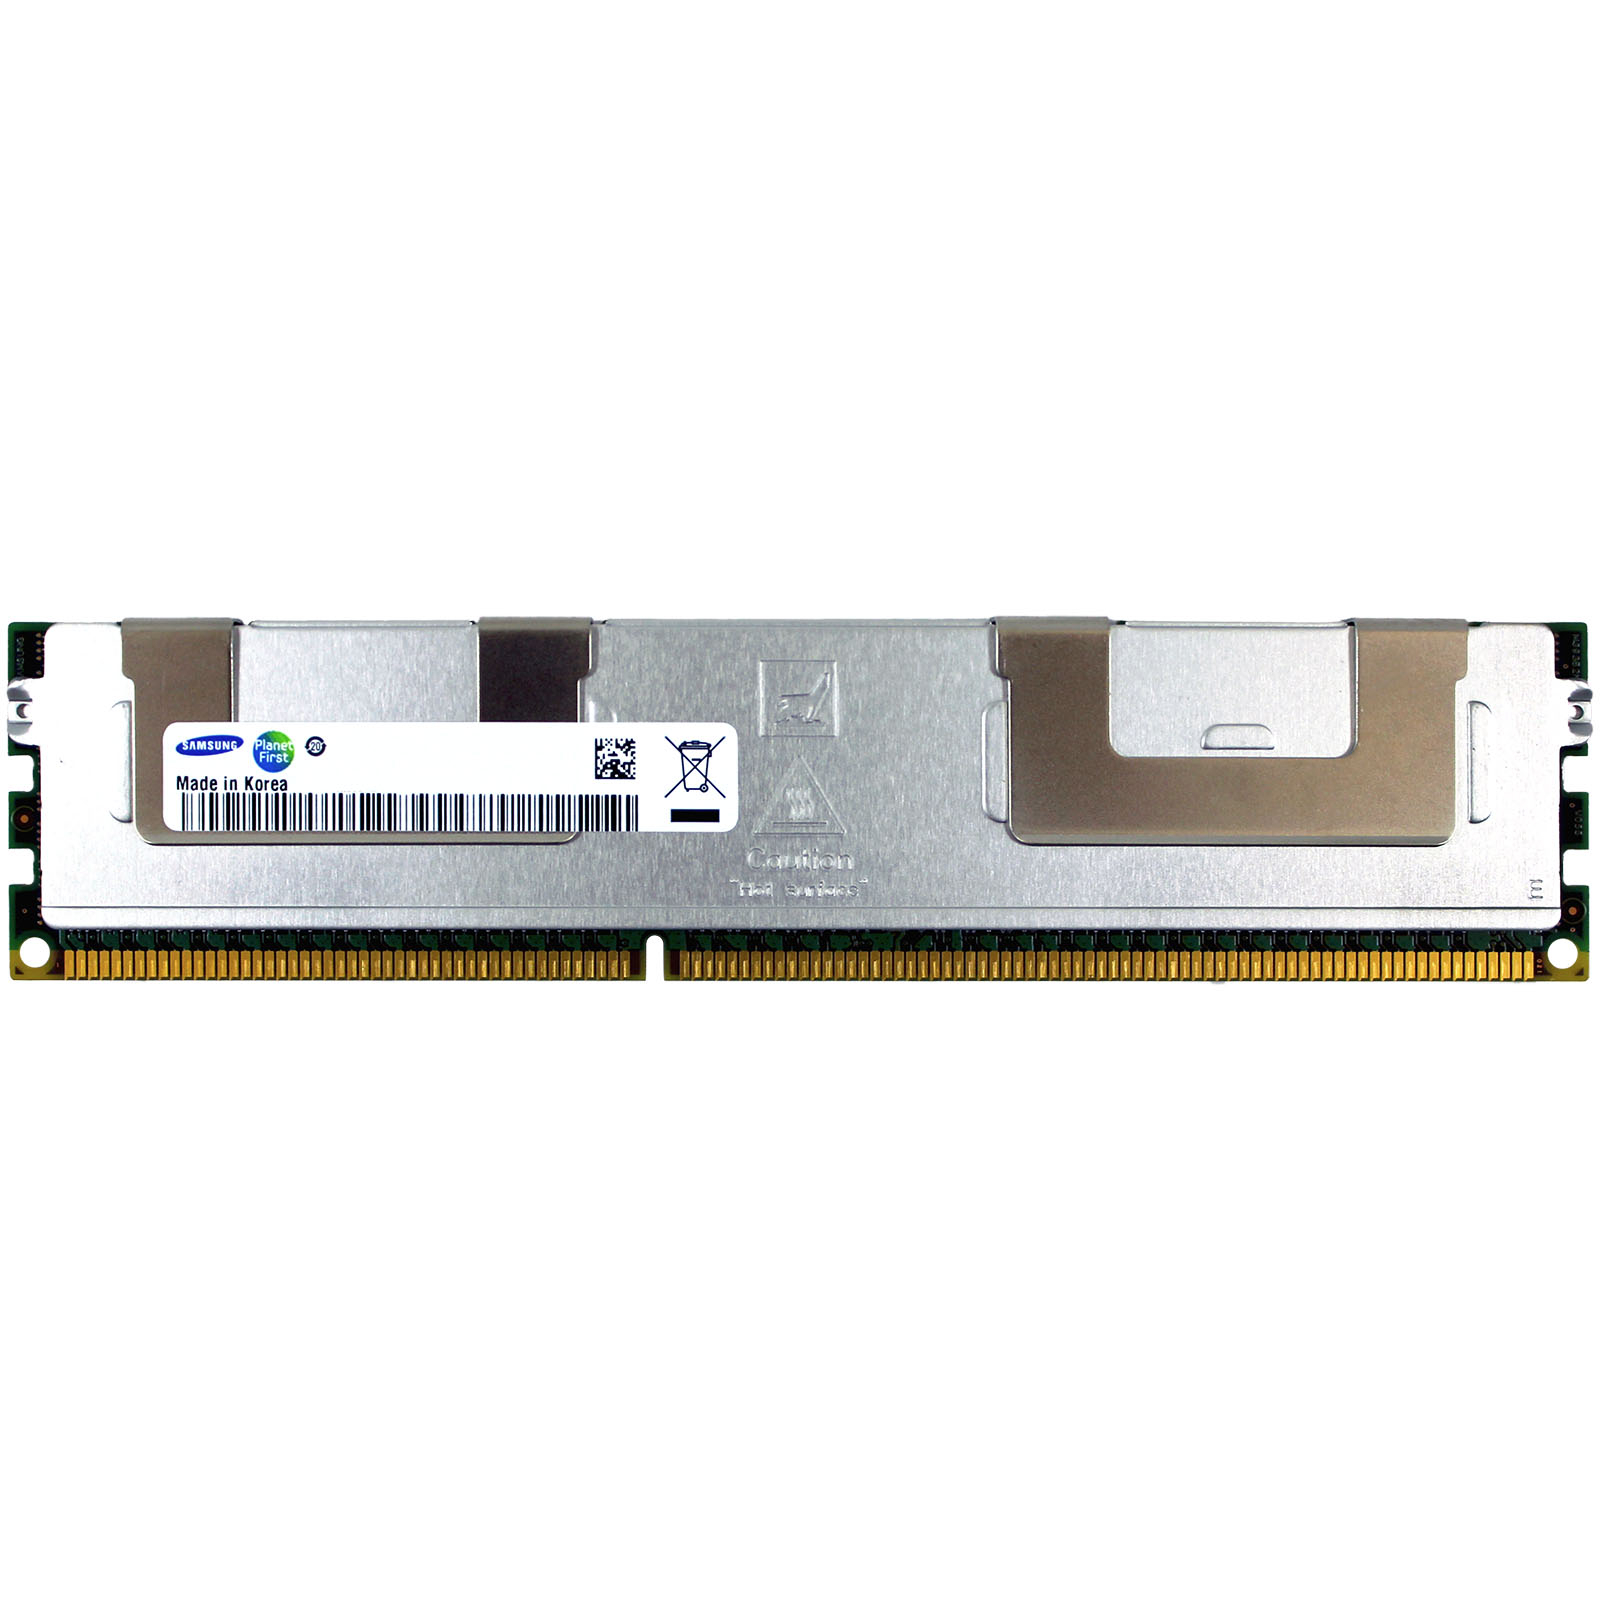 Модуль памяти для сервера DDR3 32GB ECC LRDIMM 1600Mhz 4Rx4 1.35/1.5V CL11 Samsung (M386B4G70DM0-YK0)